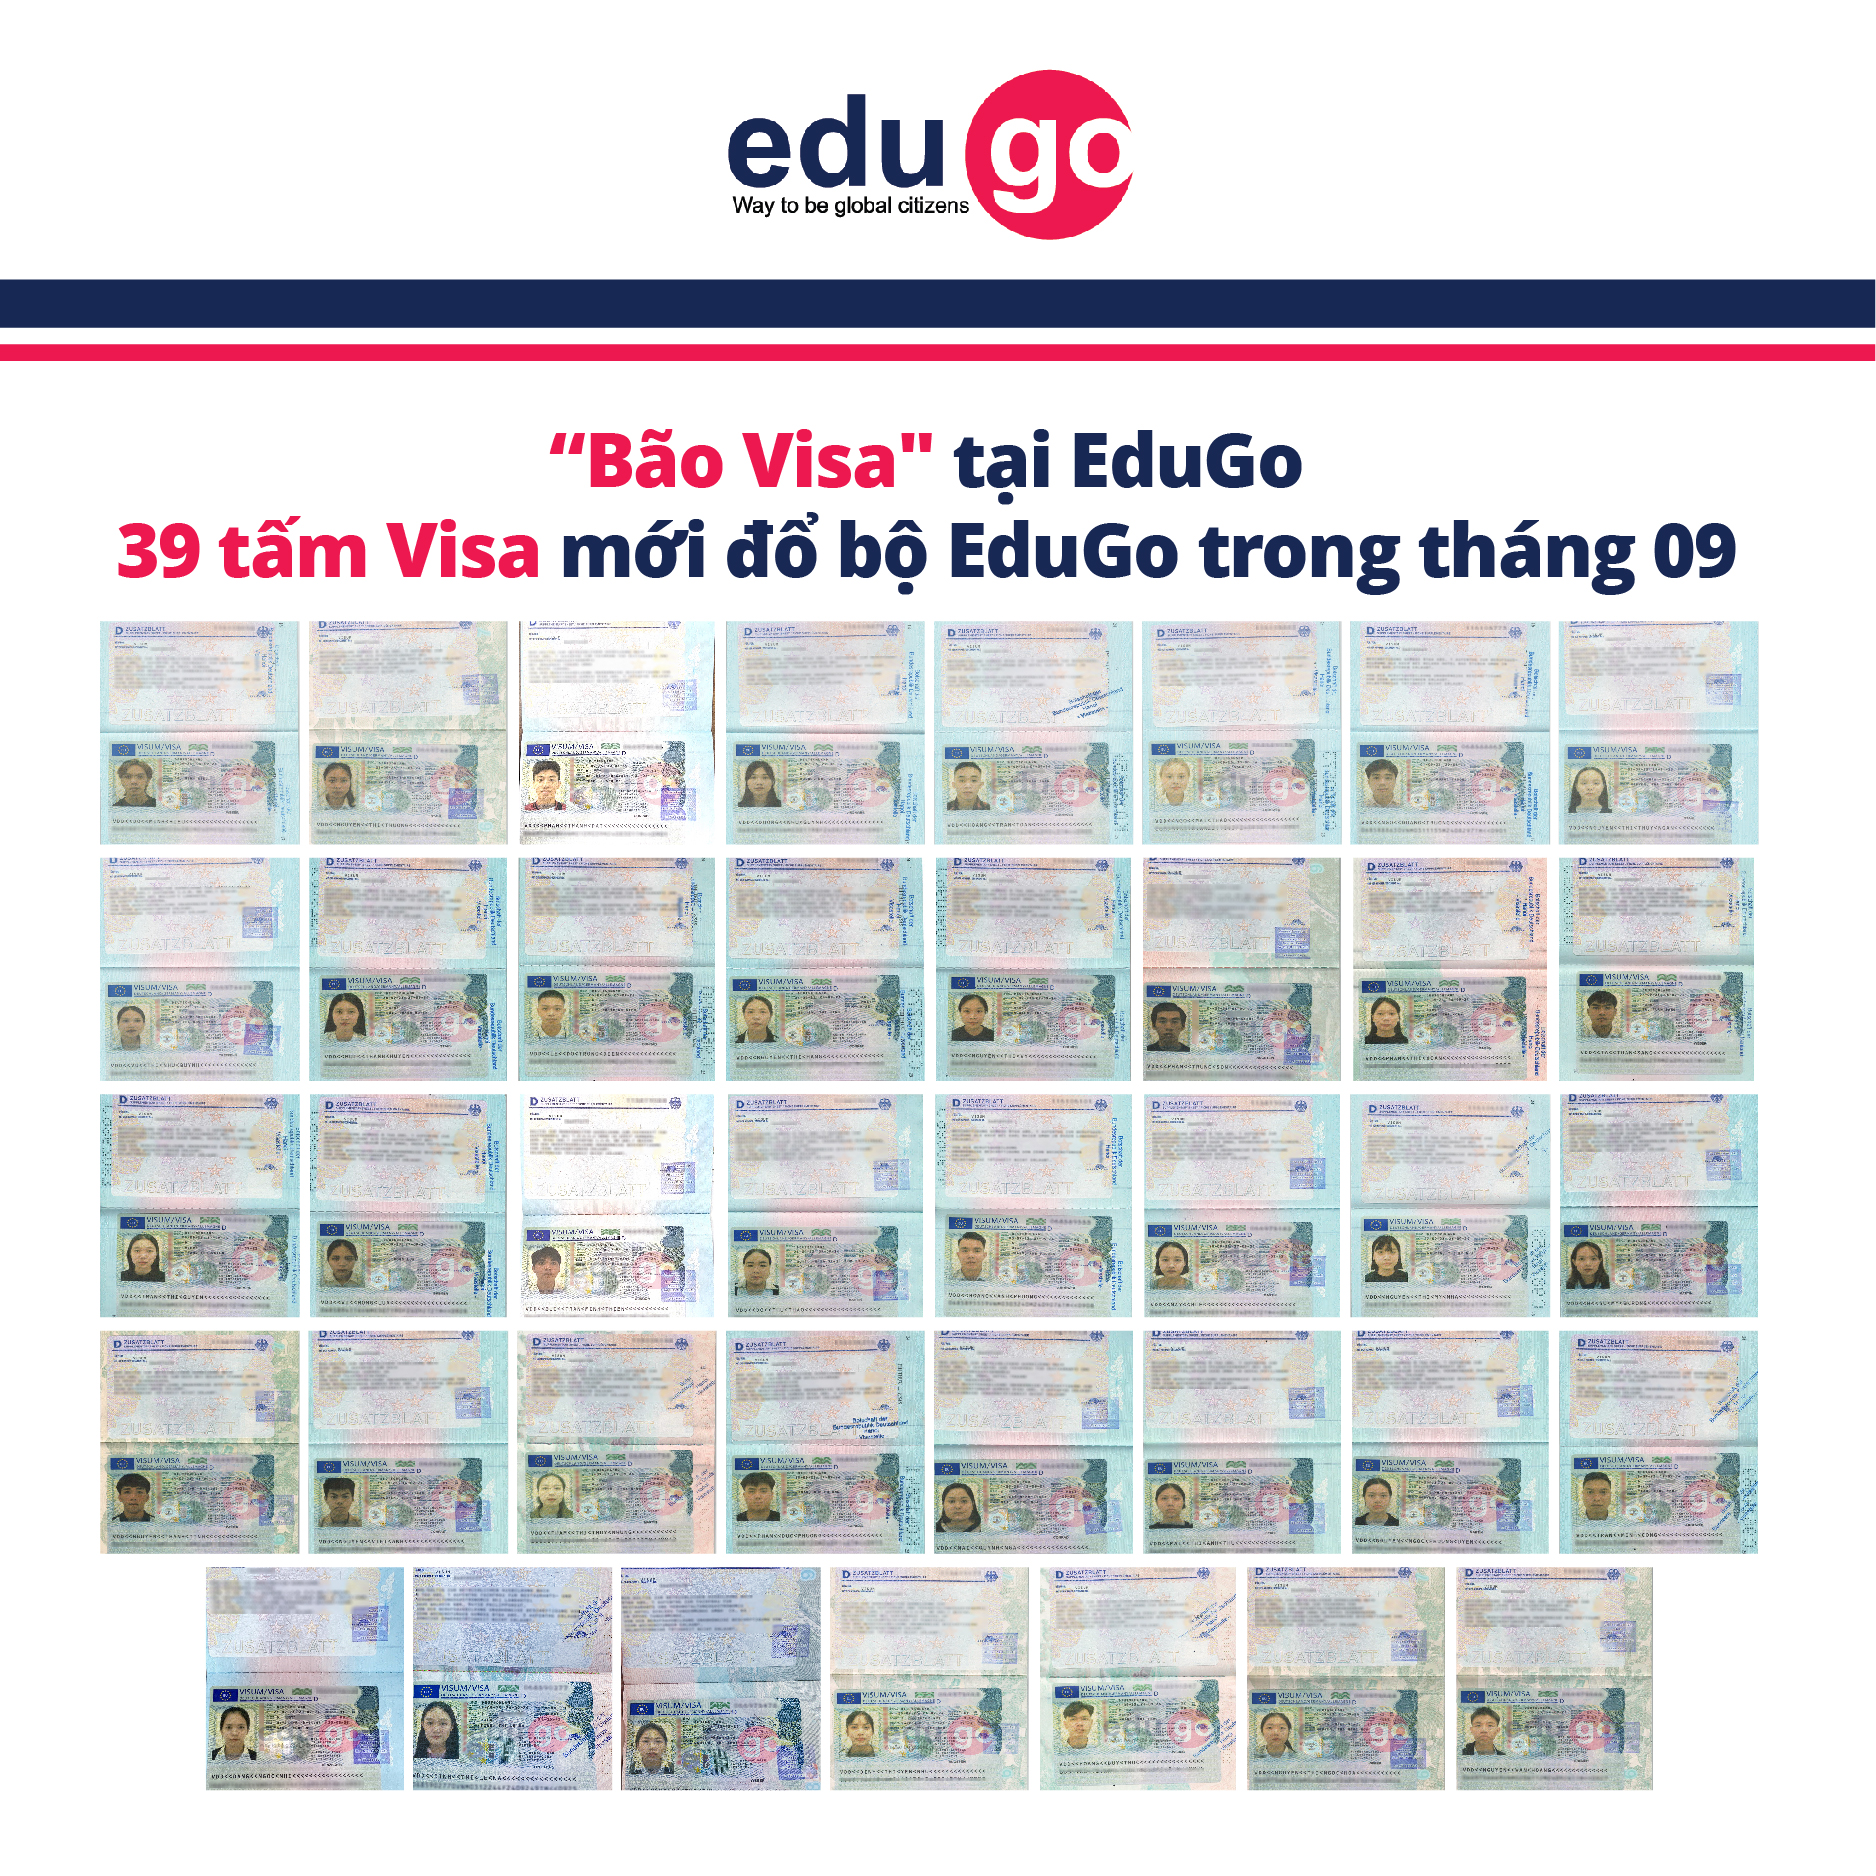 39-tam-visa-moi-do-bo-edugo-trong-thang-09